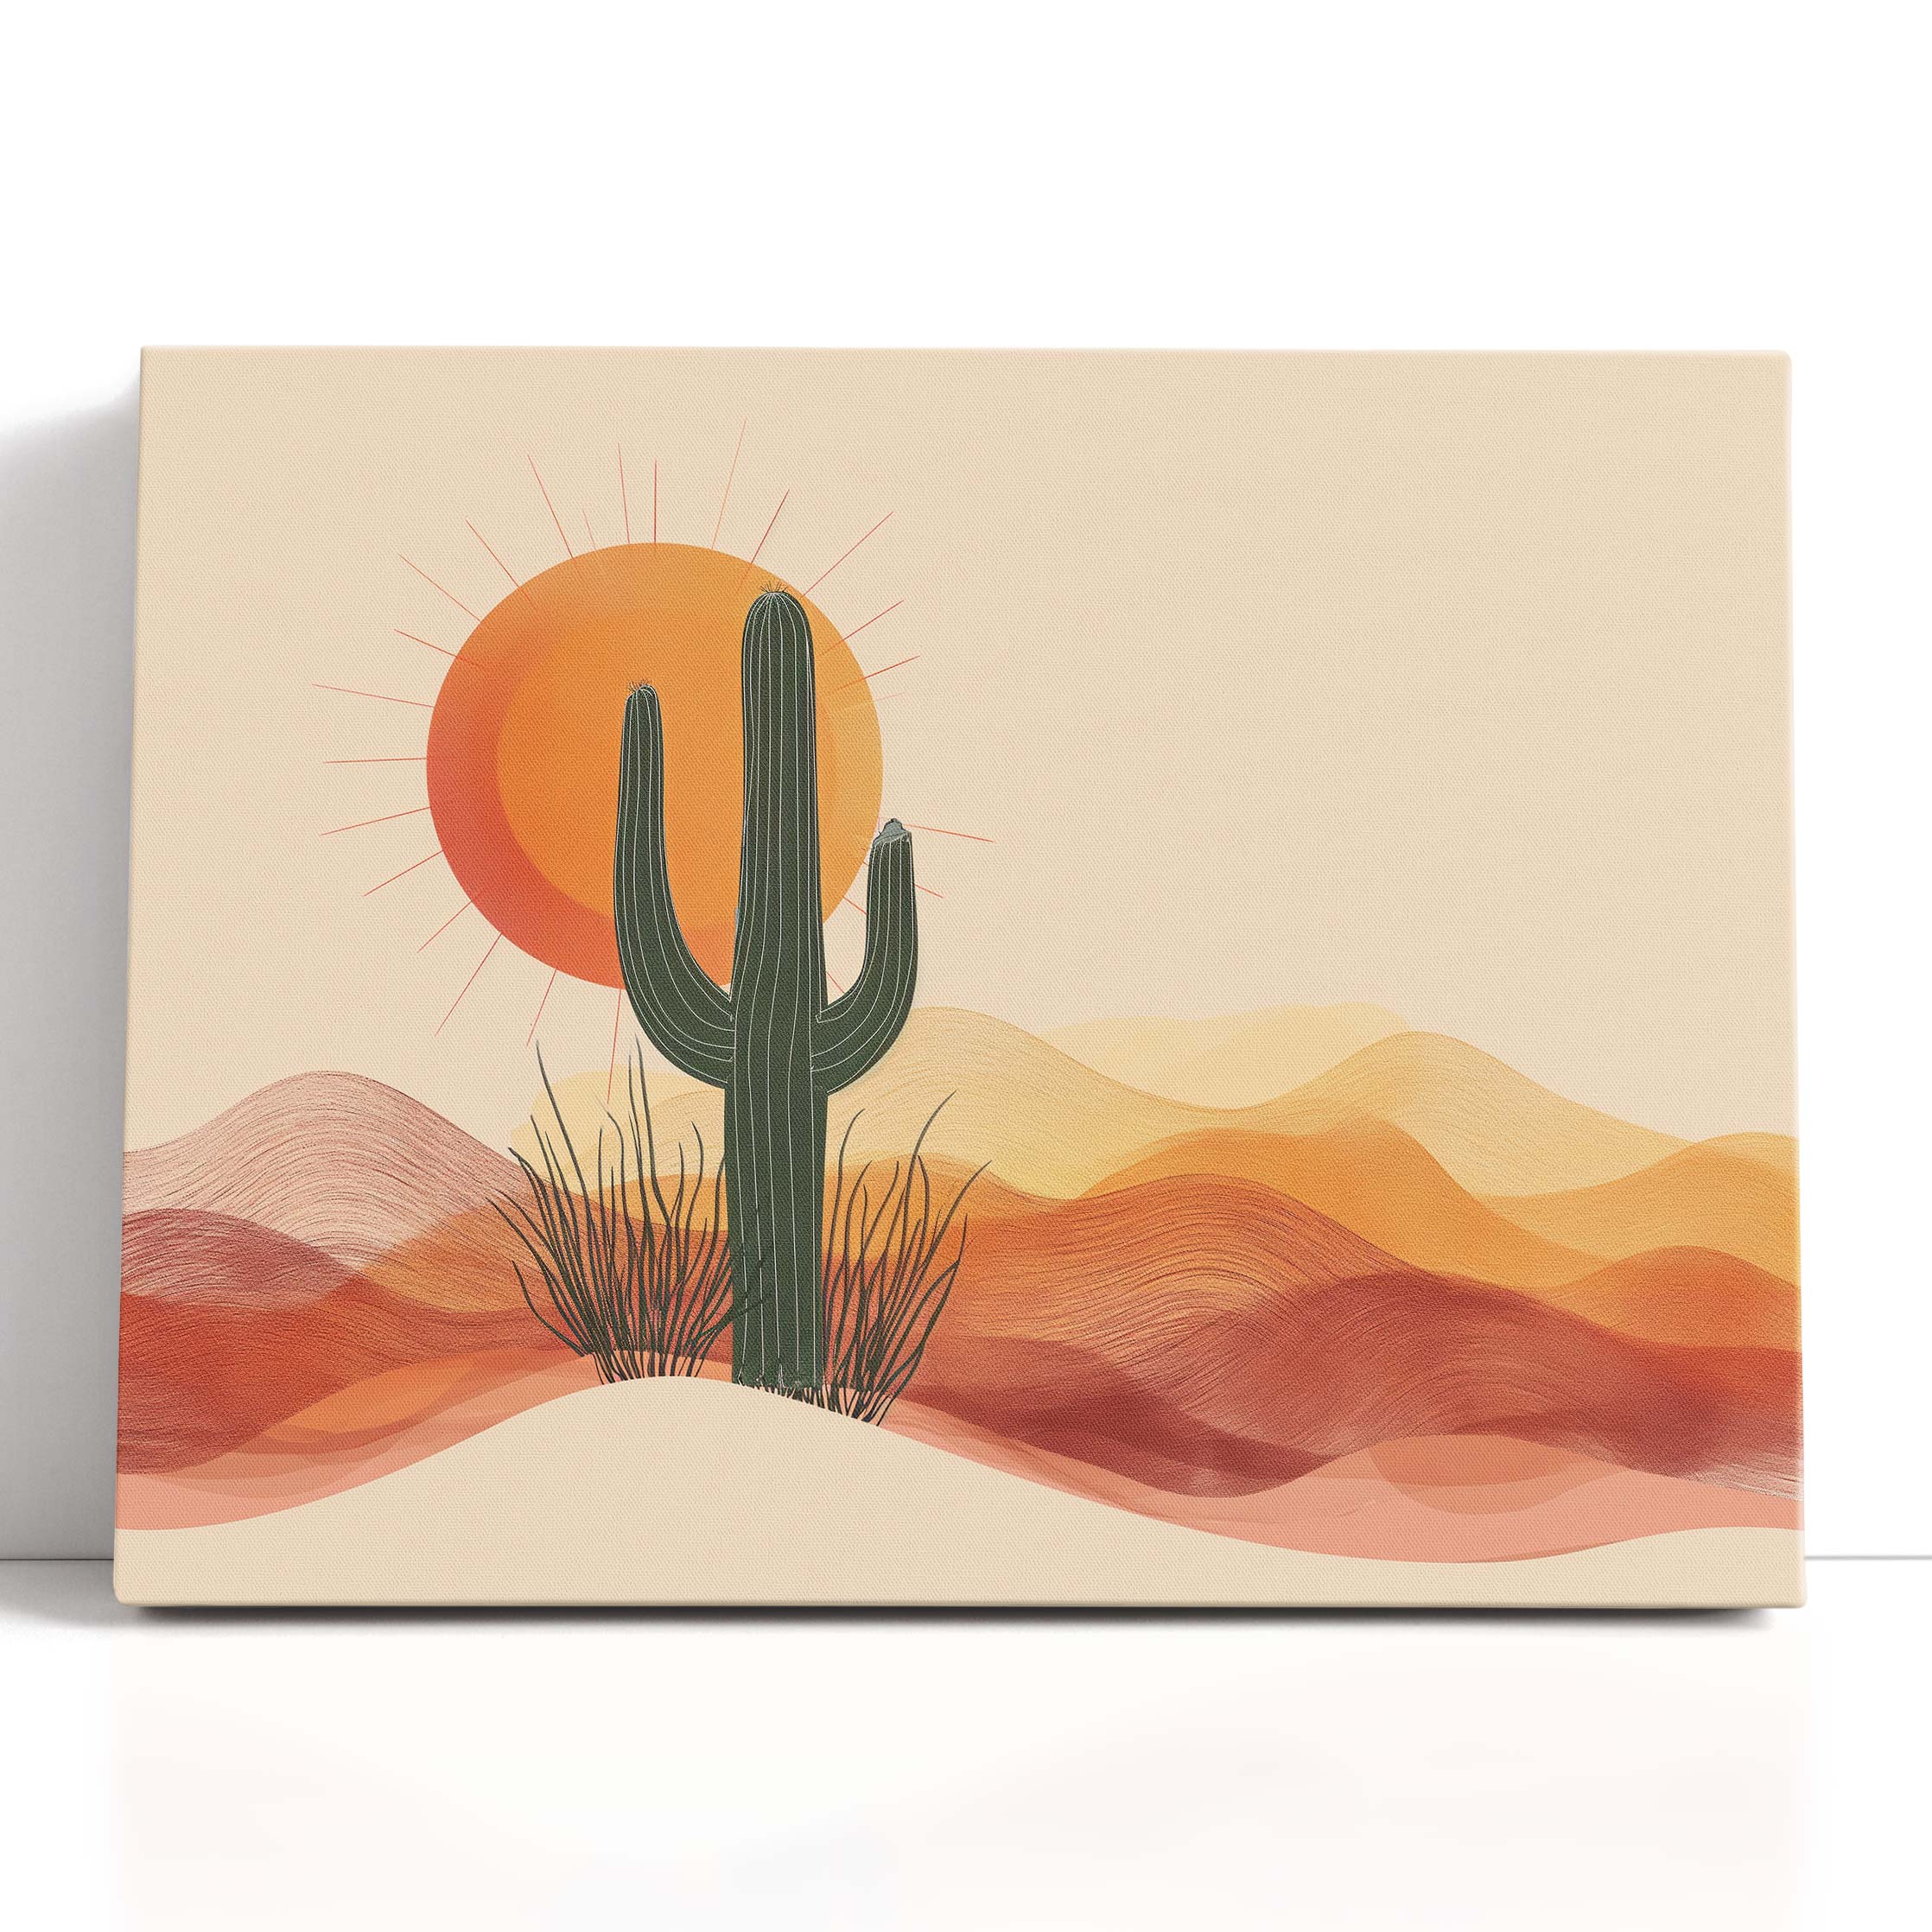  Cactus Canvas Art 